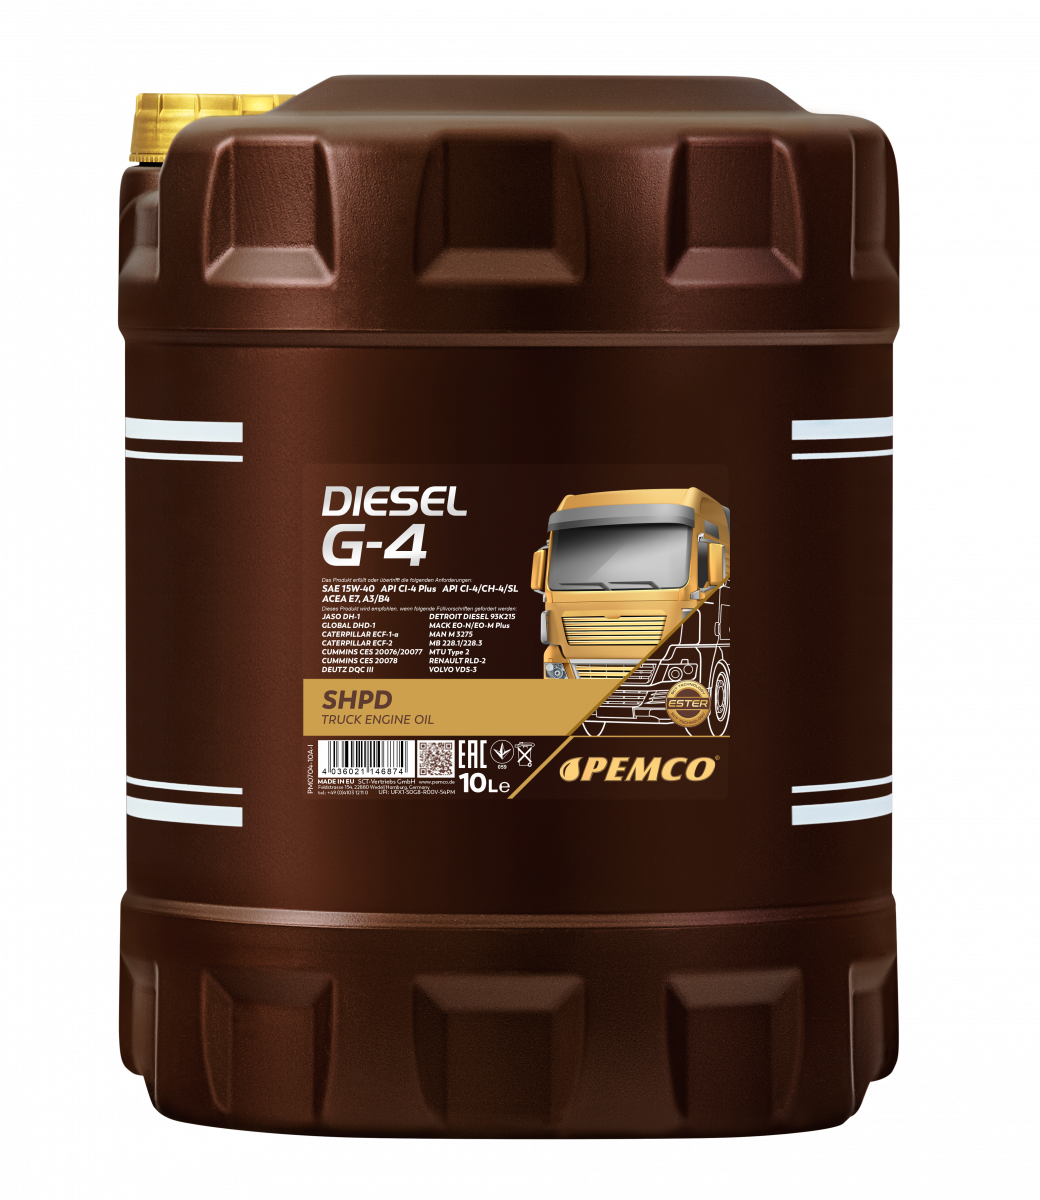 Моторное масло PEMCO DIESEL G-4 SHPD 15W-40